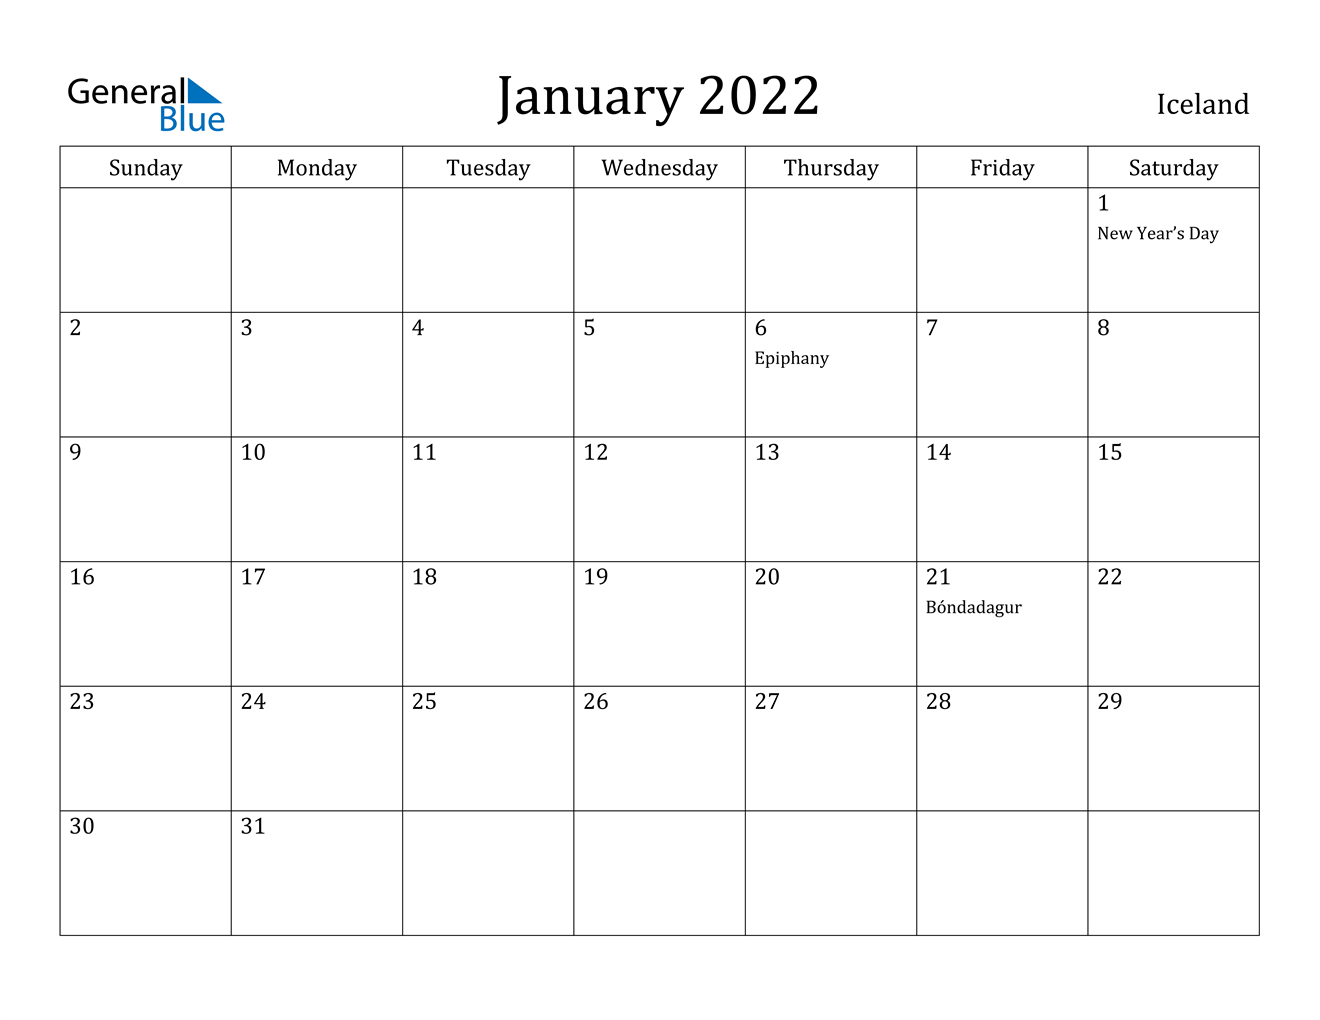 January 2022 Calendar - Iceland